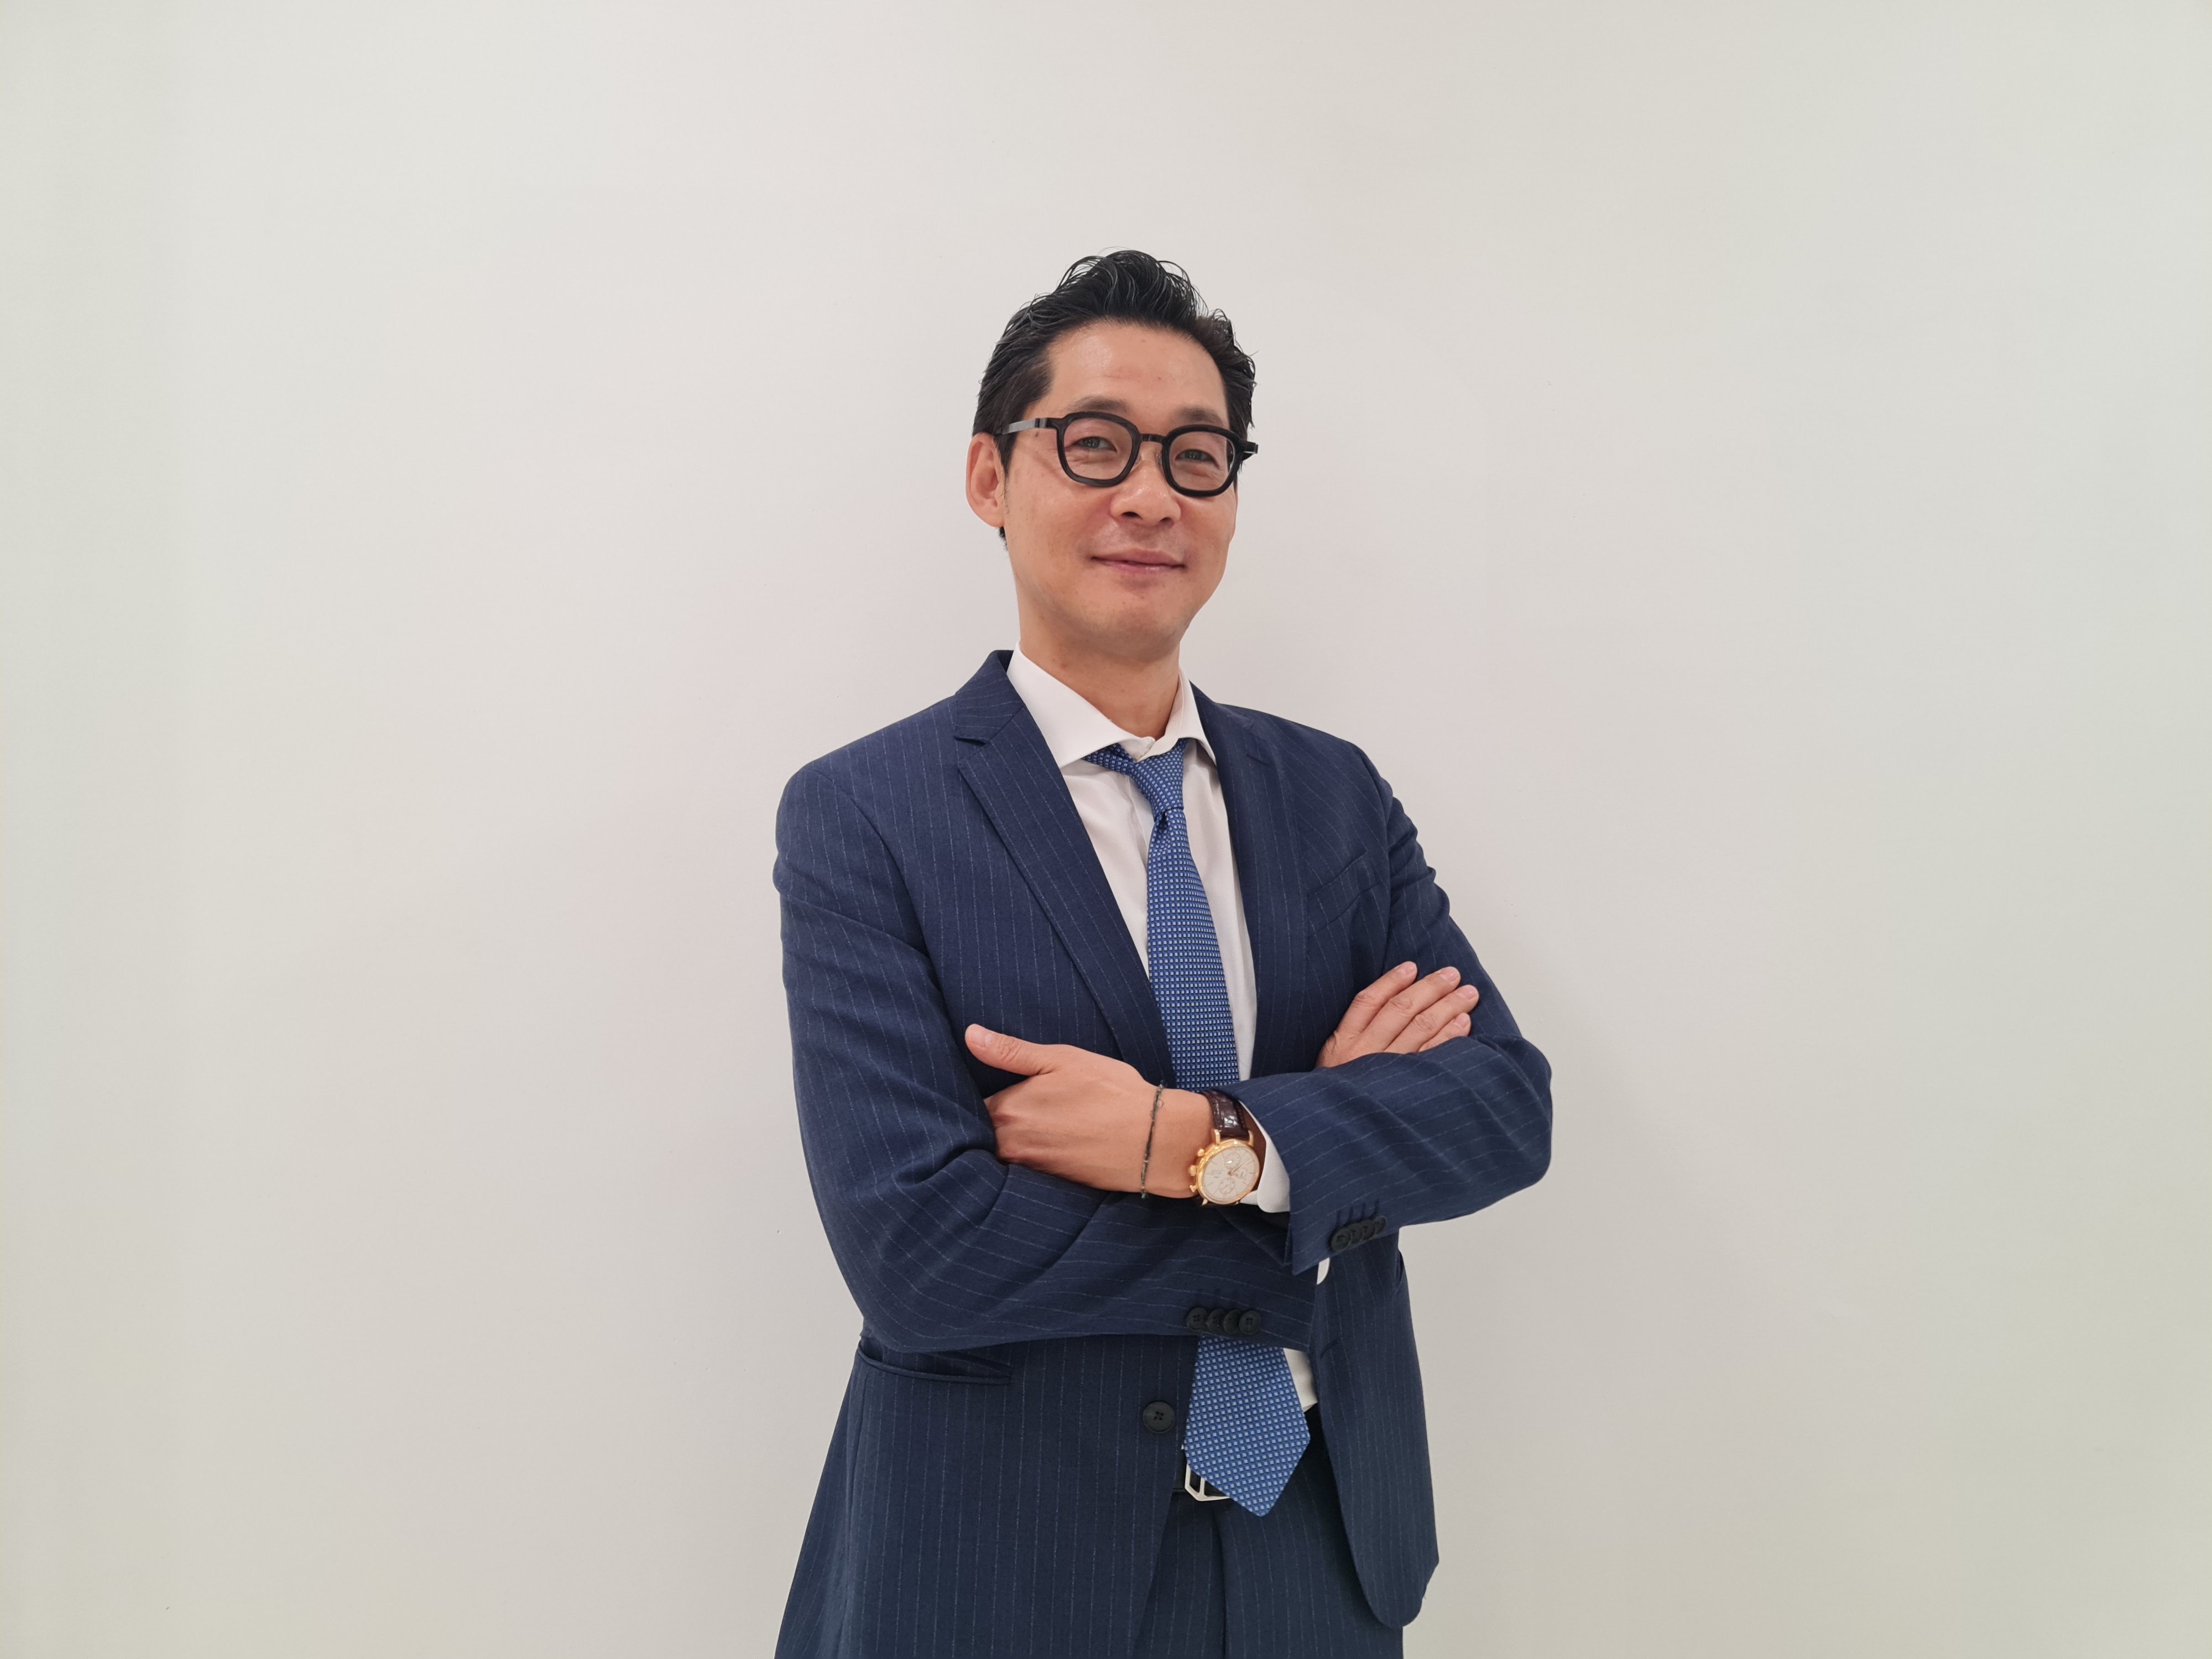 Ông Joon Suk Park - Giám đốc Khối kinh doanh quốc tế, Khối dịch vụ ngân hàng doanh nghiệp, HSBC Việt Nam.